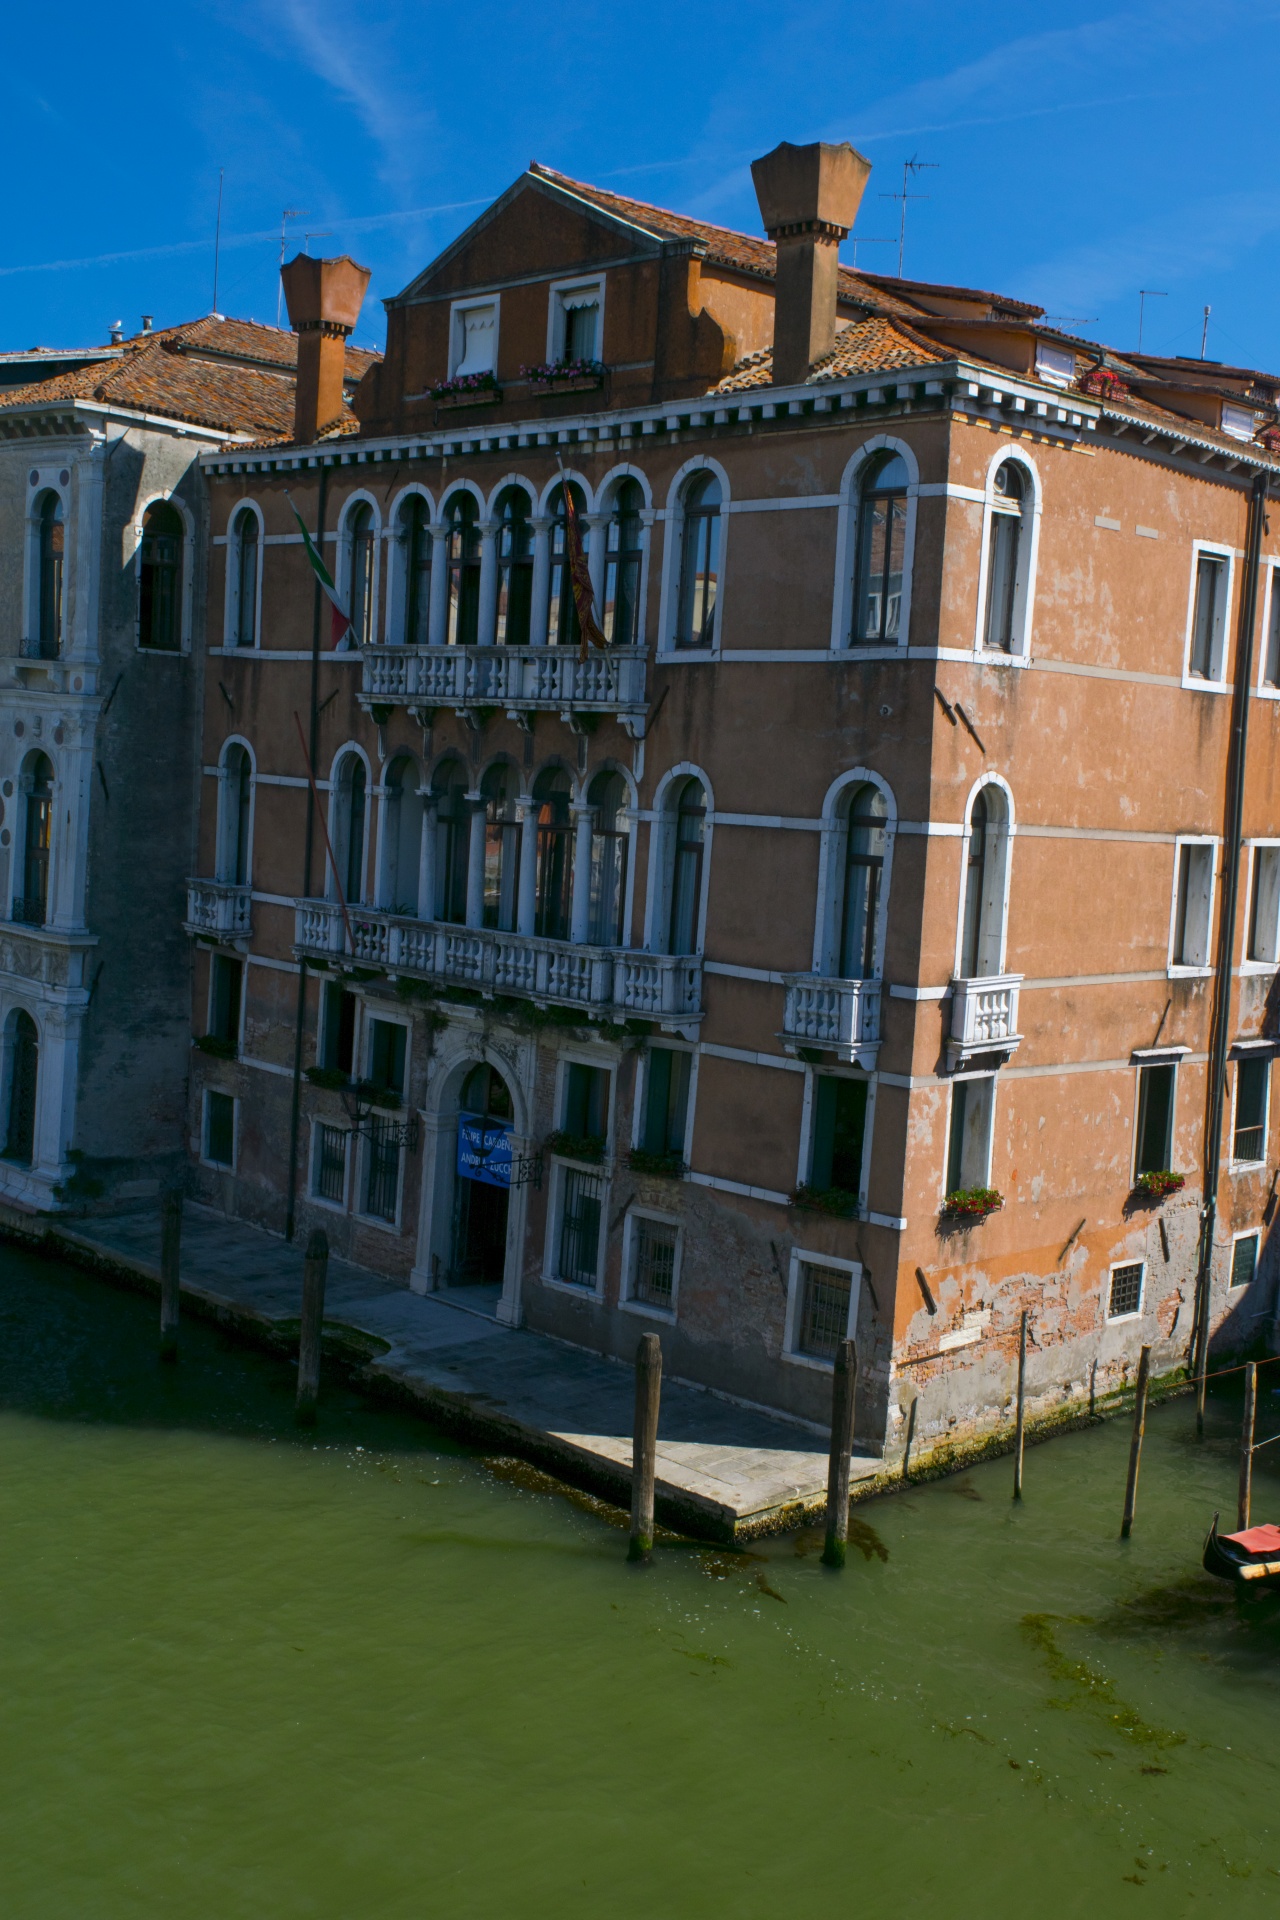 Venice Image 1893